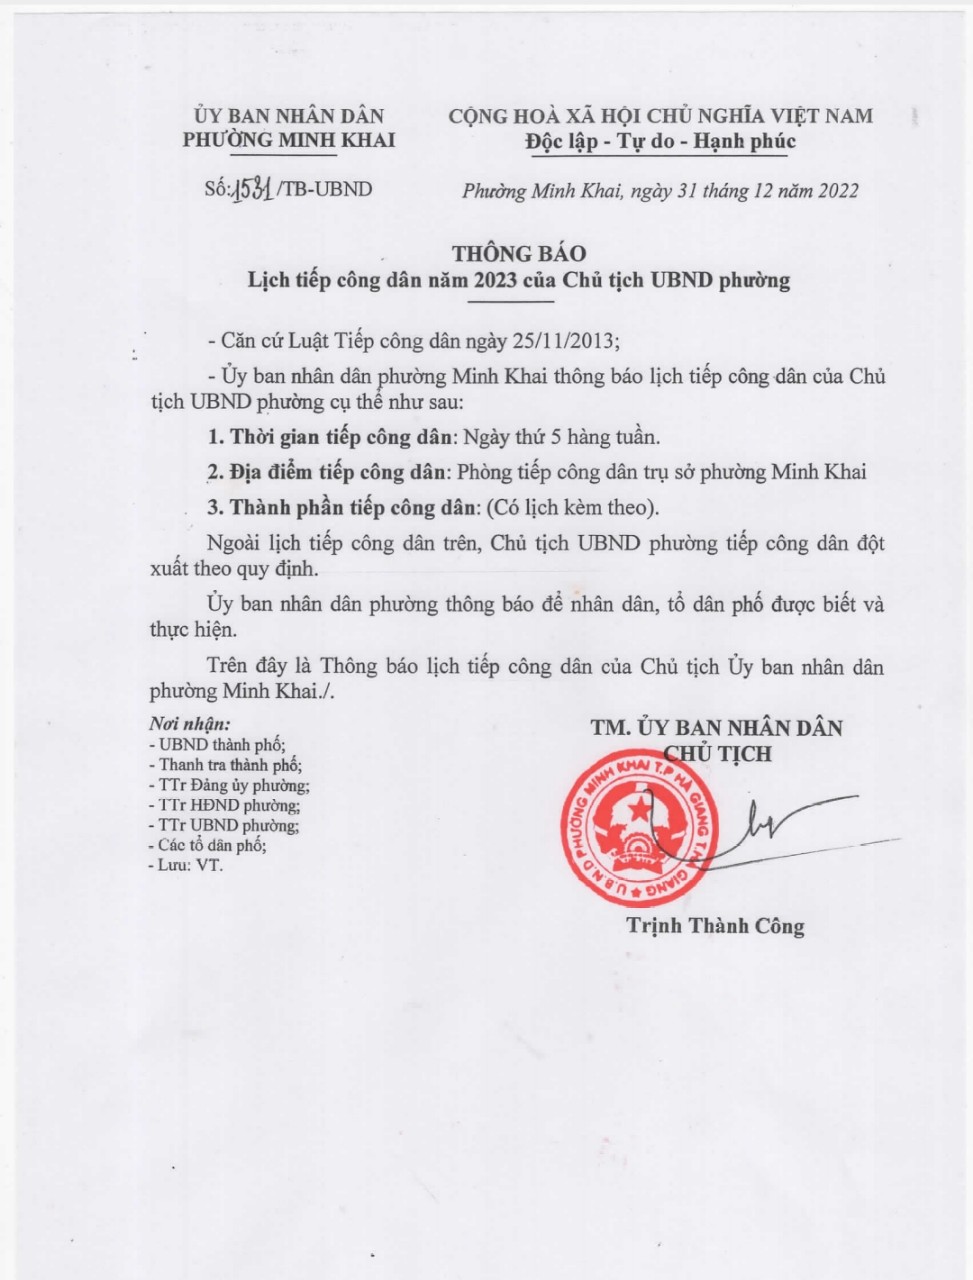 Lịch tiếp công dân năm 2023 của Chủ tịch UBND phường Minh Khai